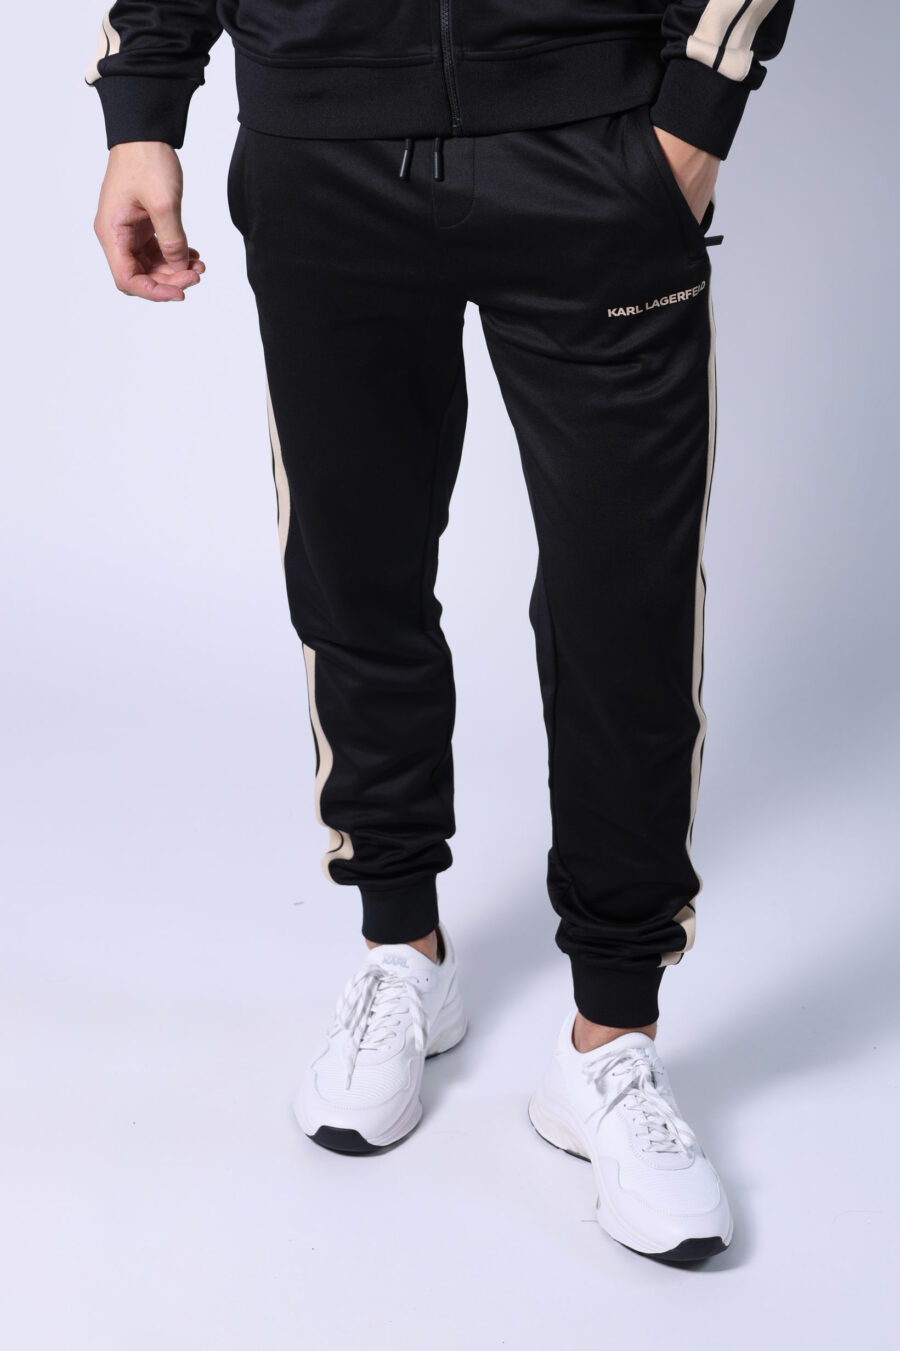 Pantalon noir avec bandes latérales minilogue et beige - Untitled Catalog 05700